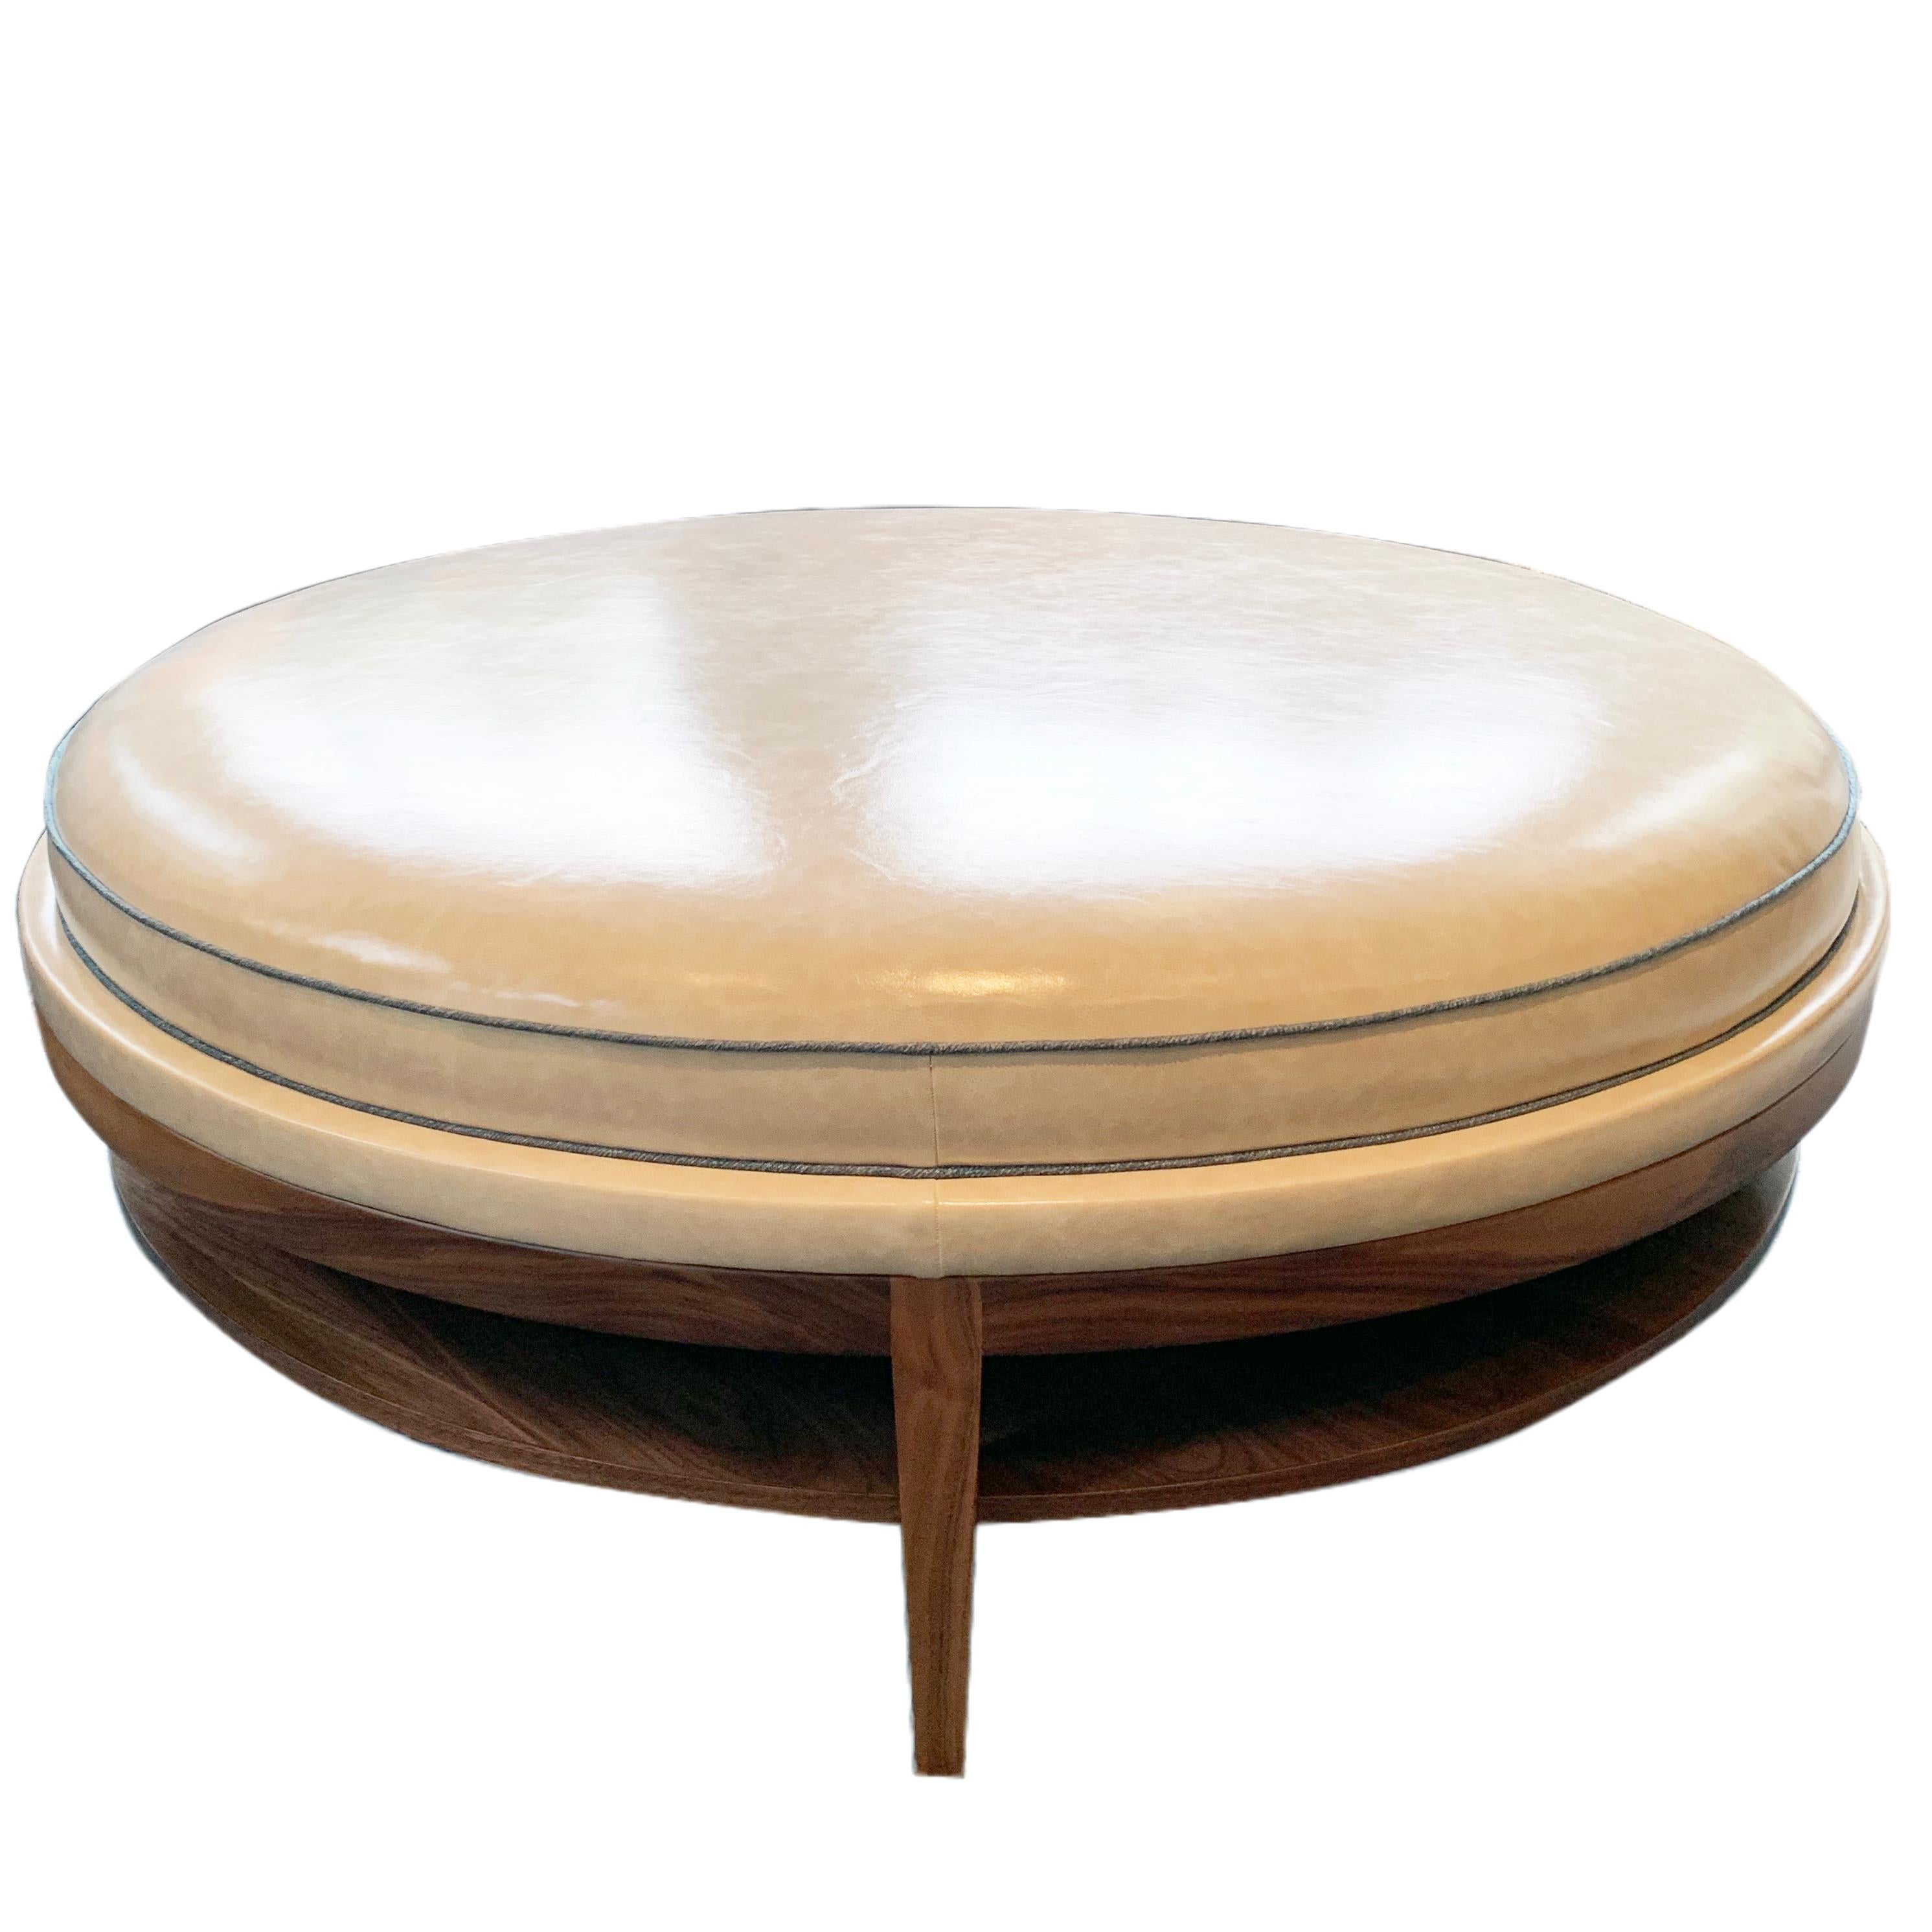 La table basse Donatella est un design inspiré de la modernité du milieu du siècle dernier, avec une touche de mode. La base, dotée d'une étagère de rangement et de pieds effilés, est fabriquée à la main en bois de noyer et finie avec une teinture